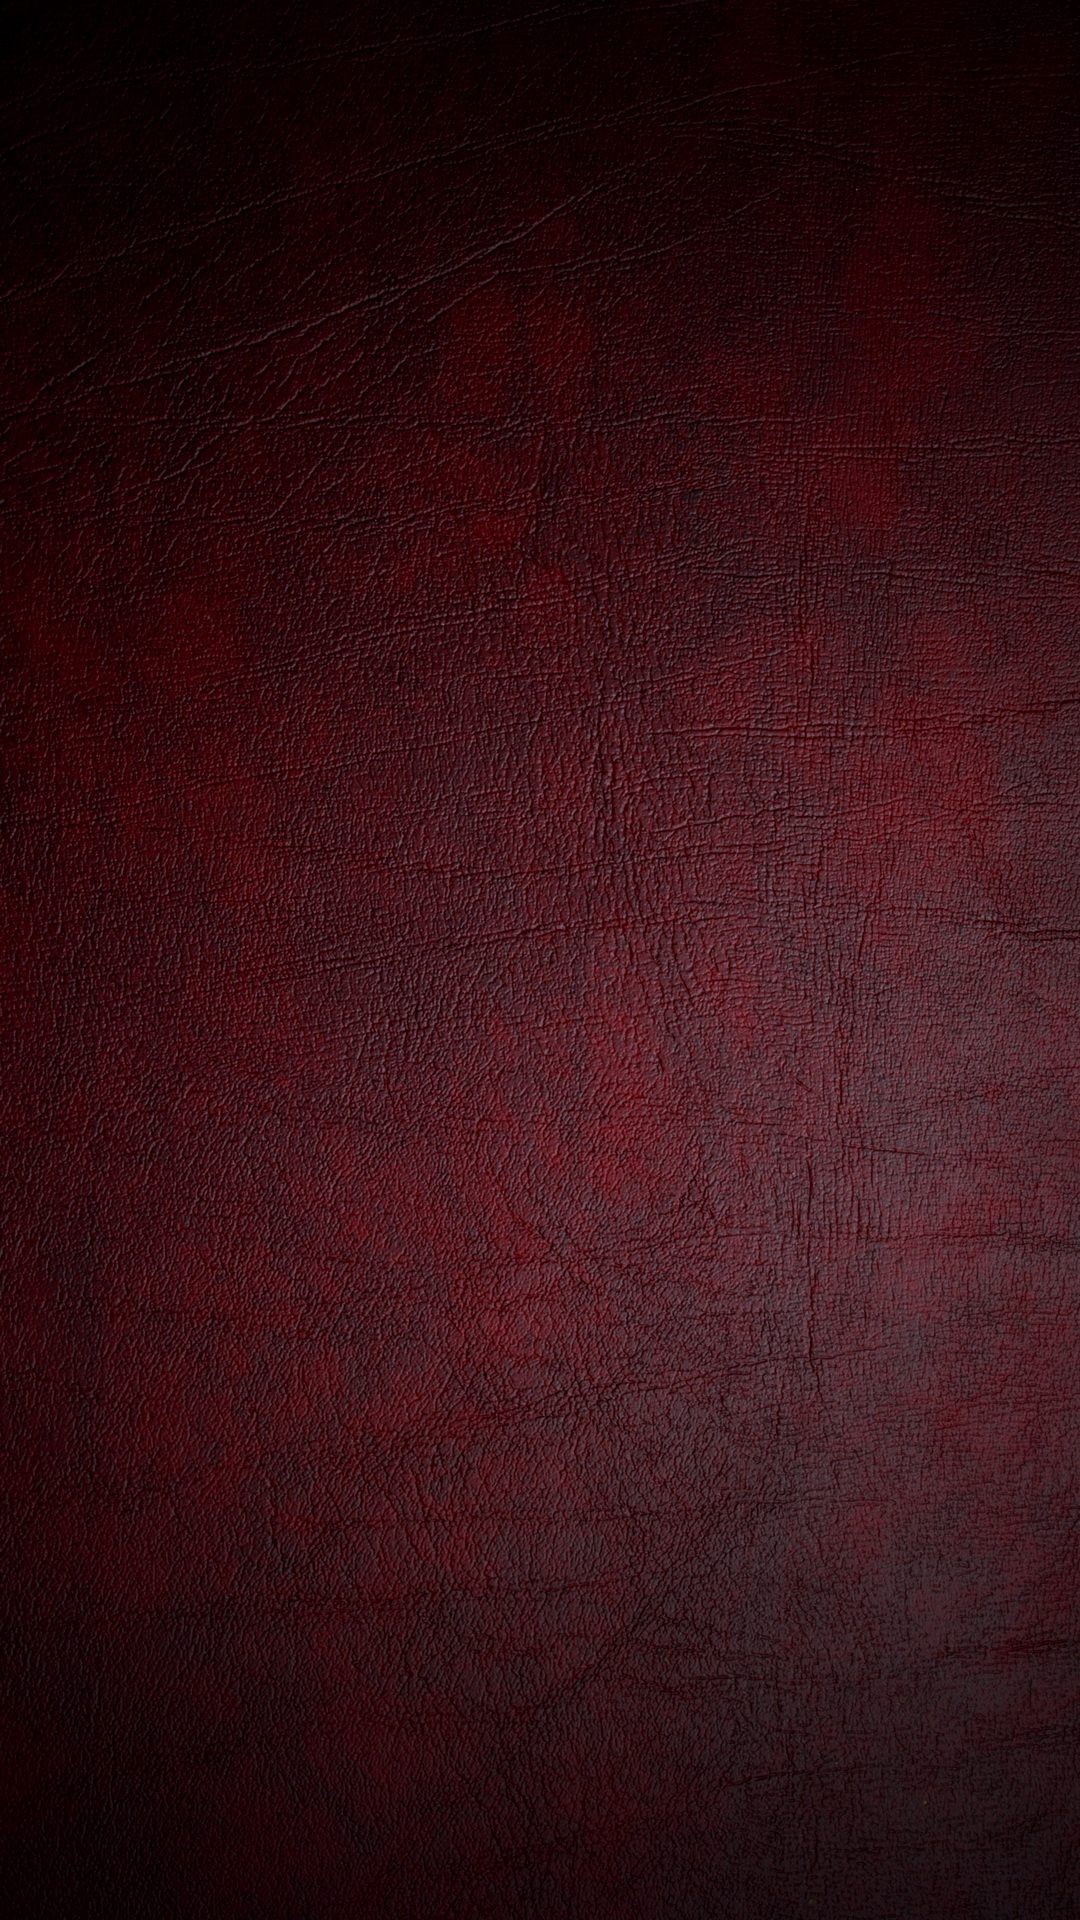 47 Red Iphone 6 Plus Wallpaper On Wallpapersafari